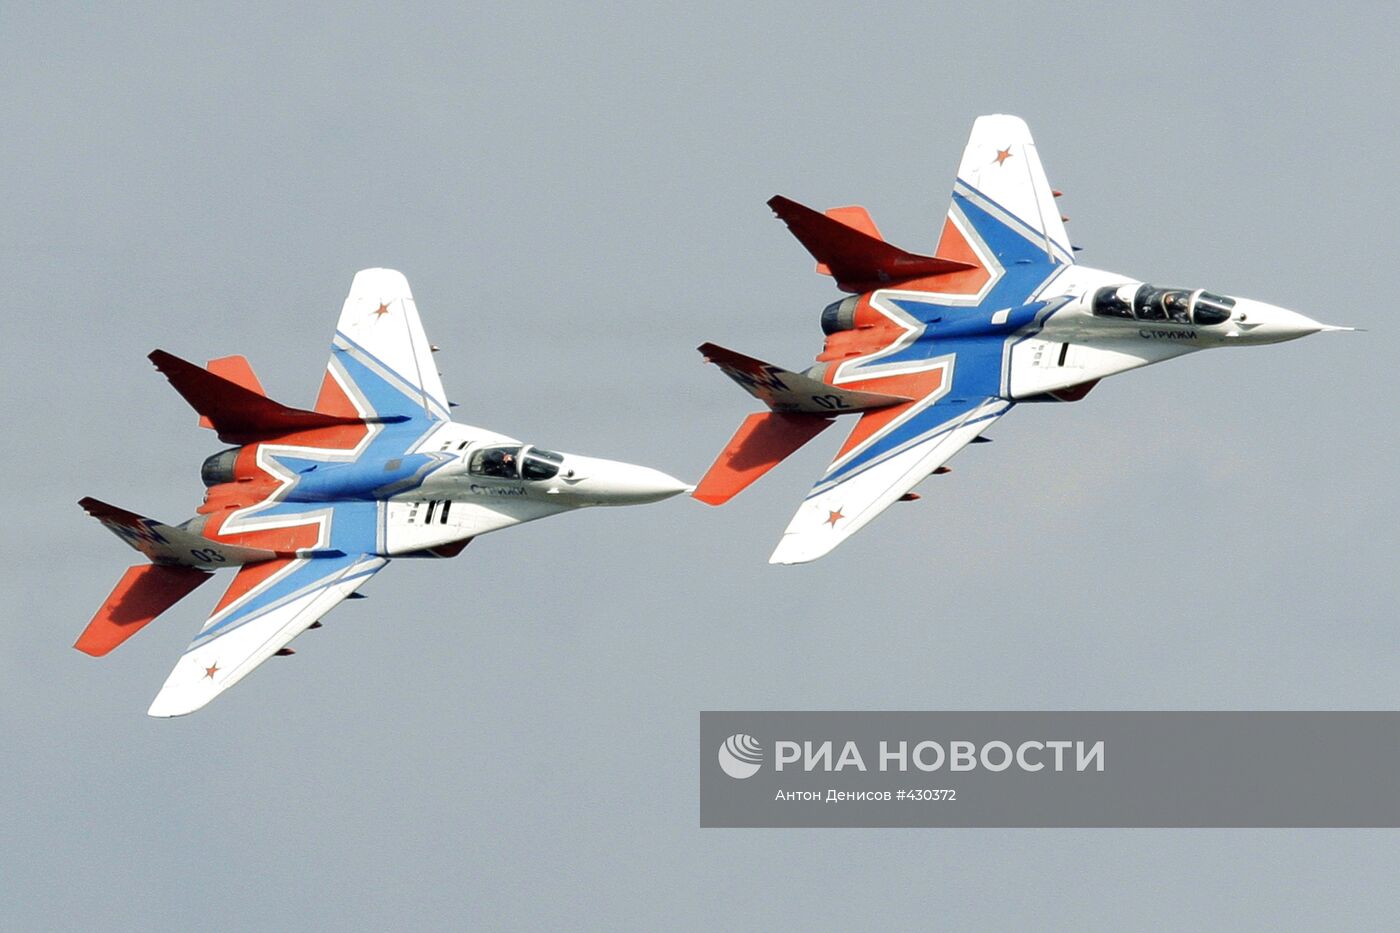 Истребители МиГ-29 пилотажной группы "Стрижи"